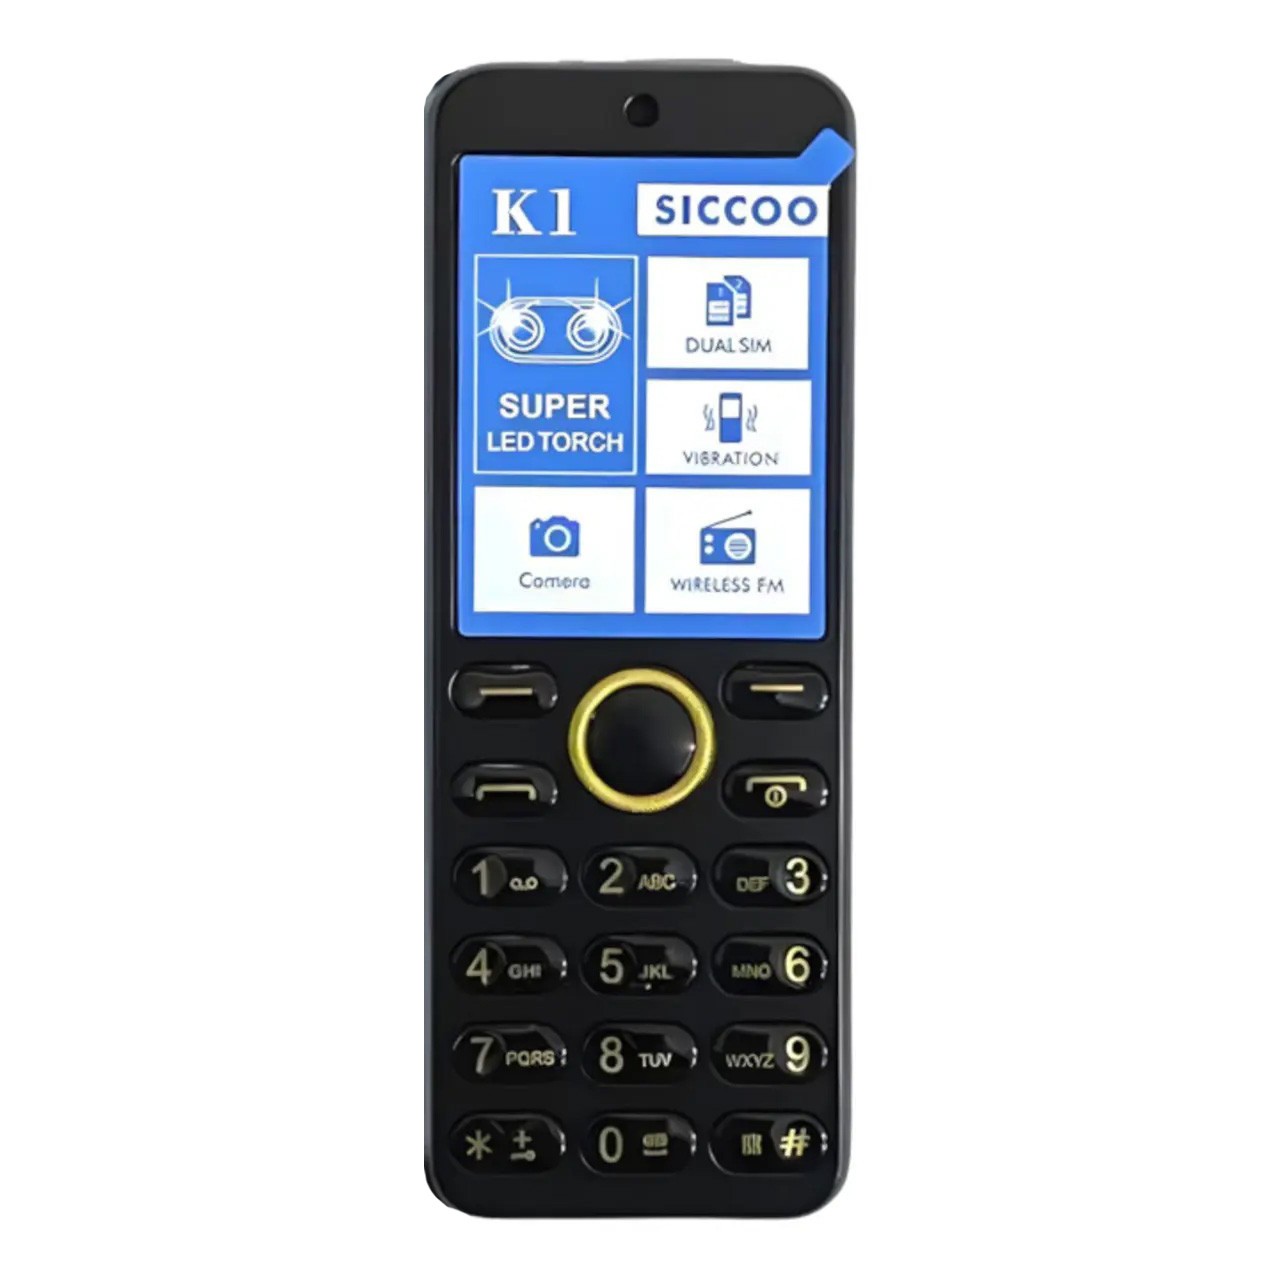 گوشی موبایل سیکو SICCOO K1 دو سیم کارت ظرفیت 32 مگابایت و رم 32 مگابایت